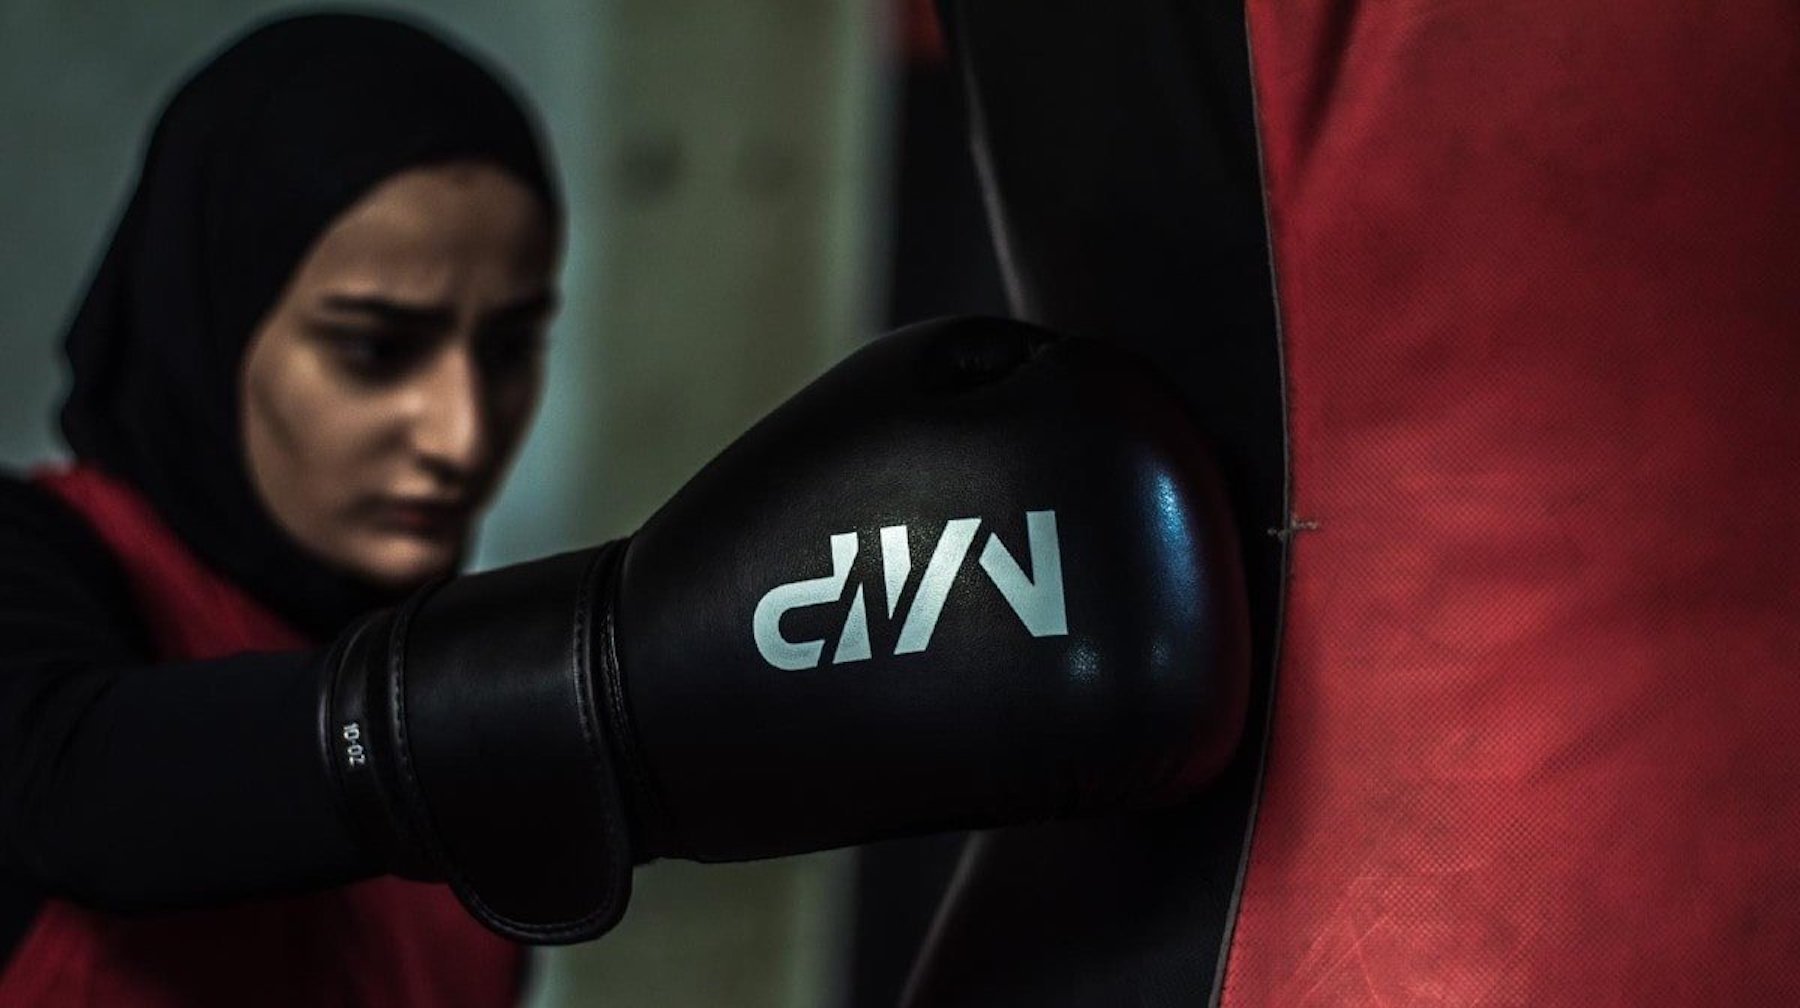 The Hijaibi boxer berättar hur hon planerar att ”förändra boxningsvärlden”